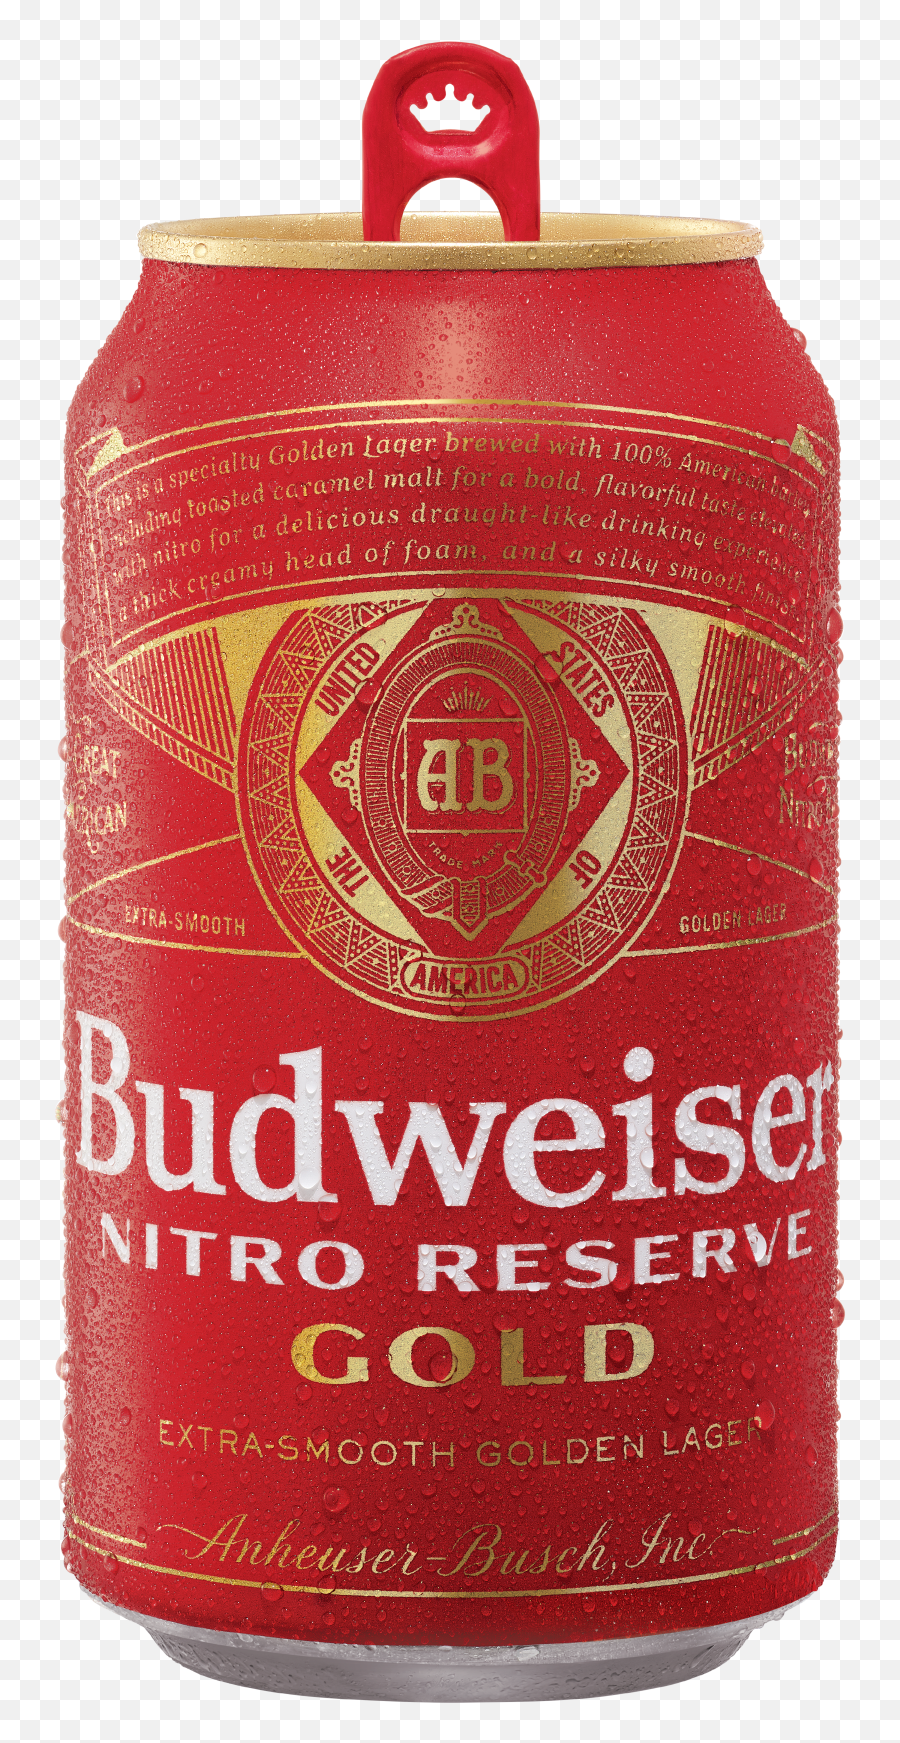 Budweiser Nitro Reserve Gold - Budweiser Png,Budweiser Can Png